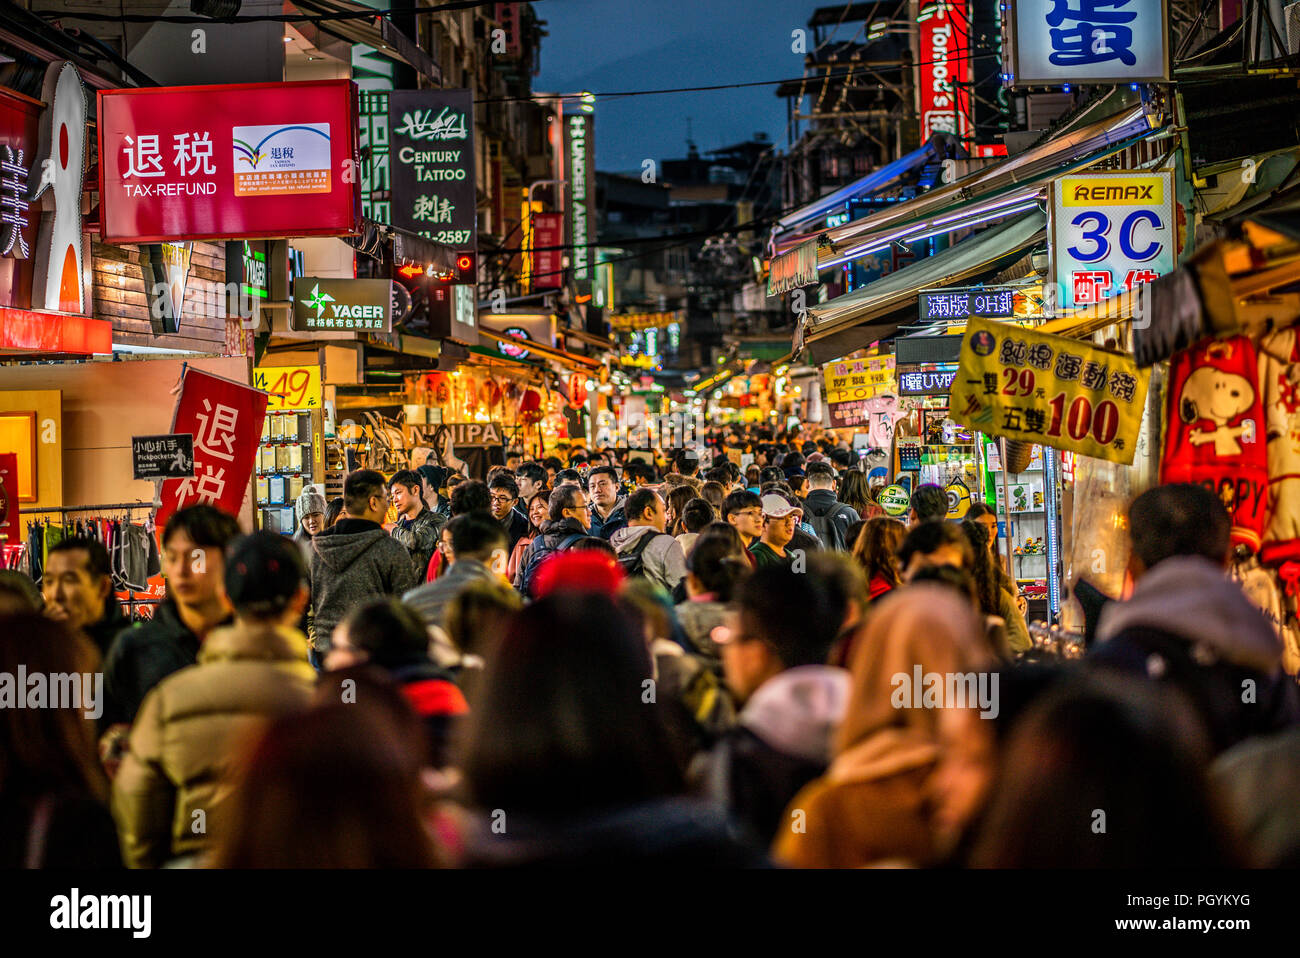 13 February 2018, Taipei Taiwan: Street view of full of people Shilin night market in Taipei Taiwan Stock Photo